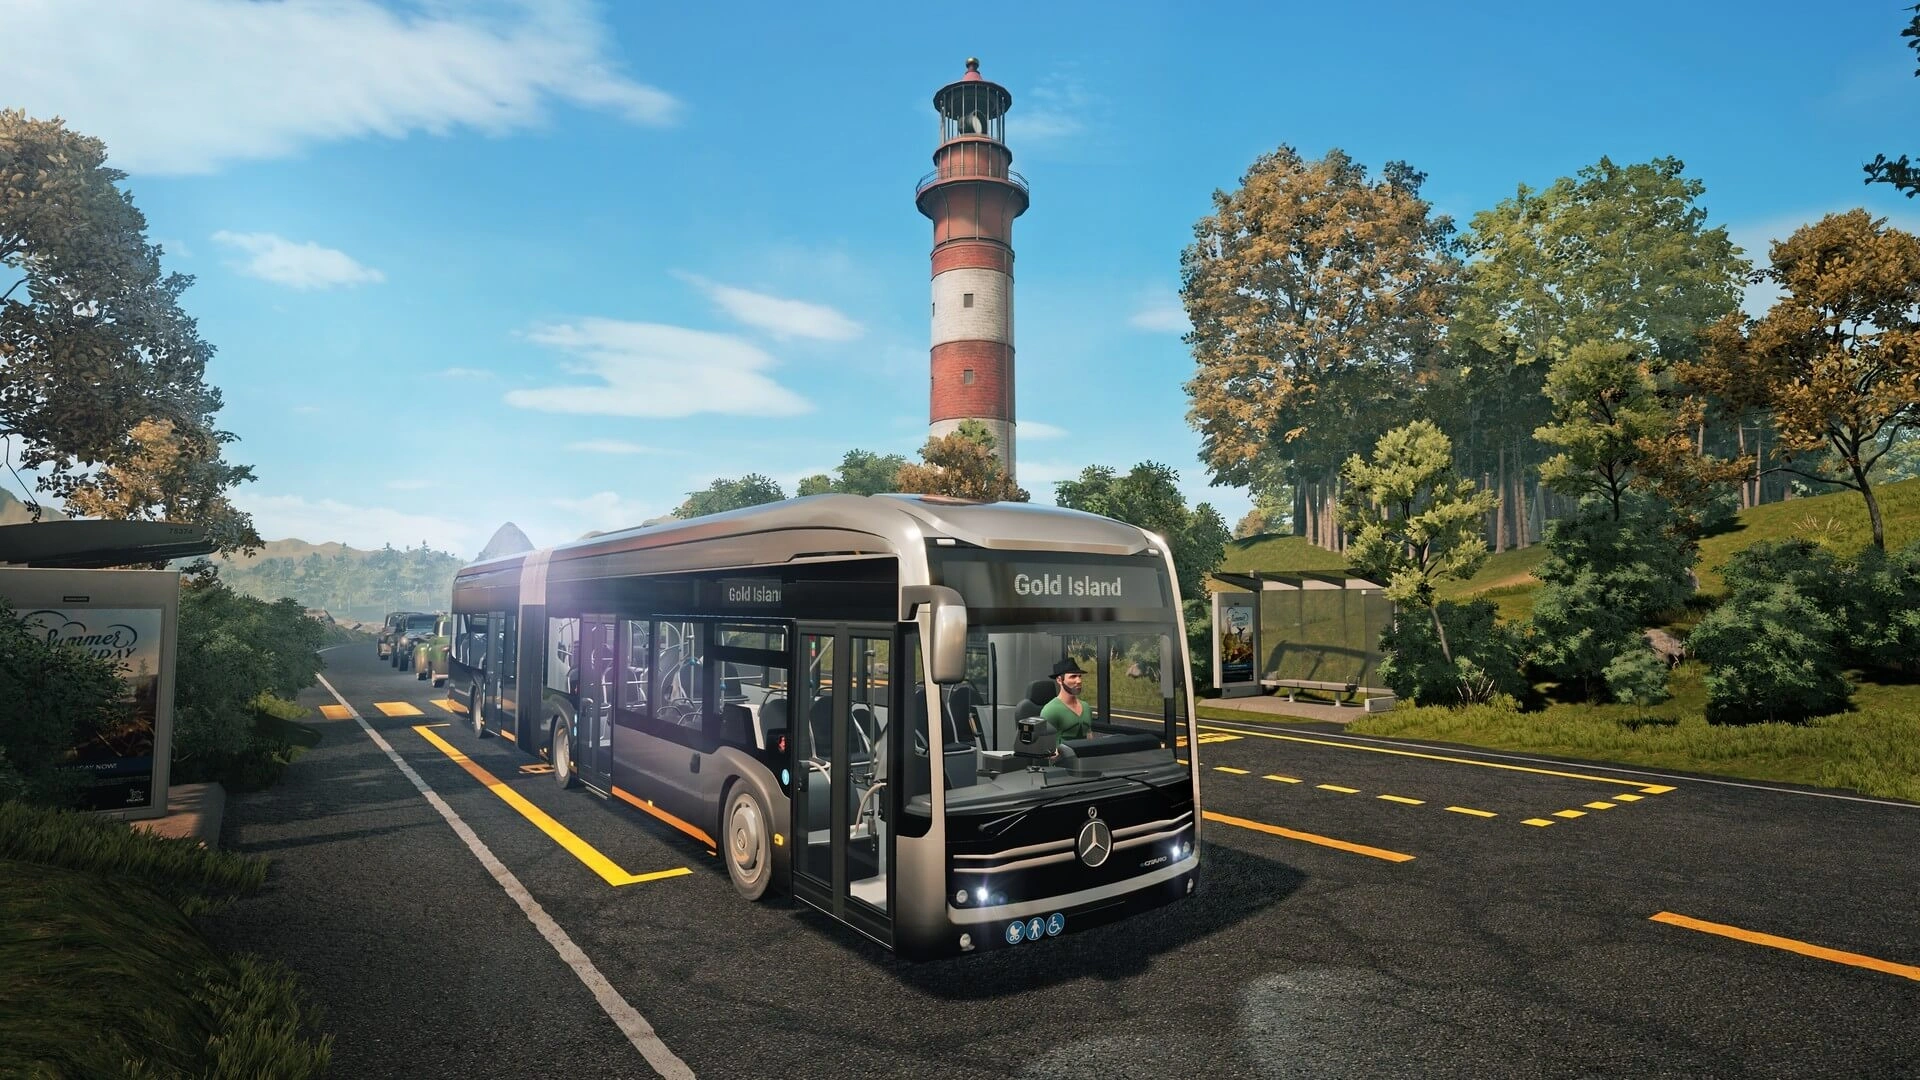 Bus Simulator 21